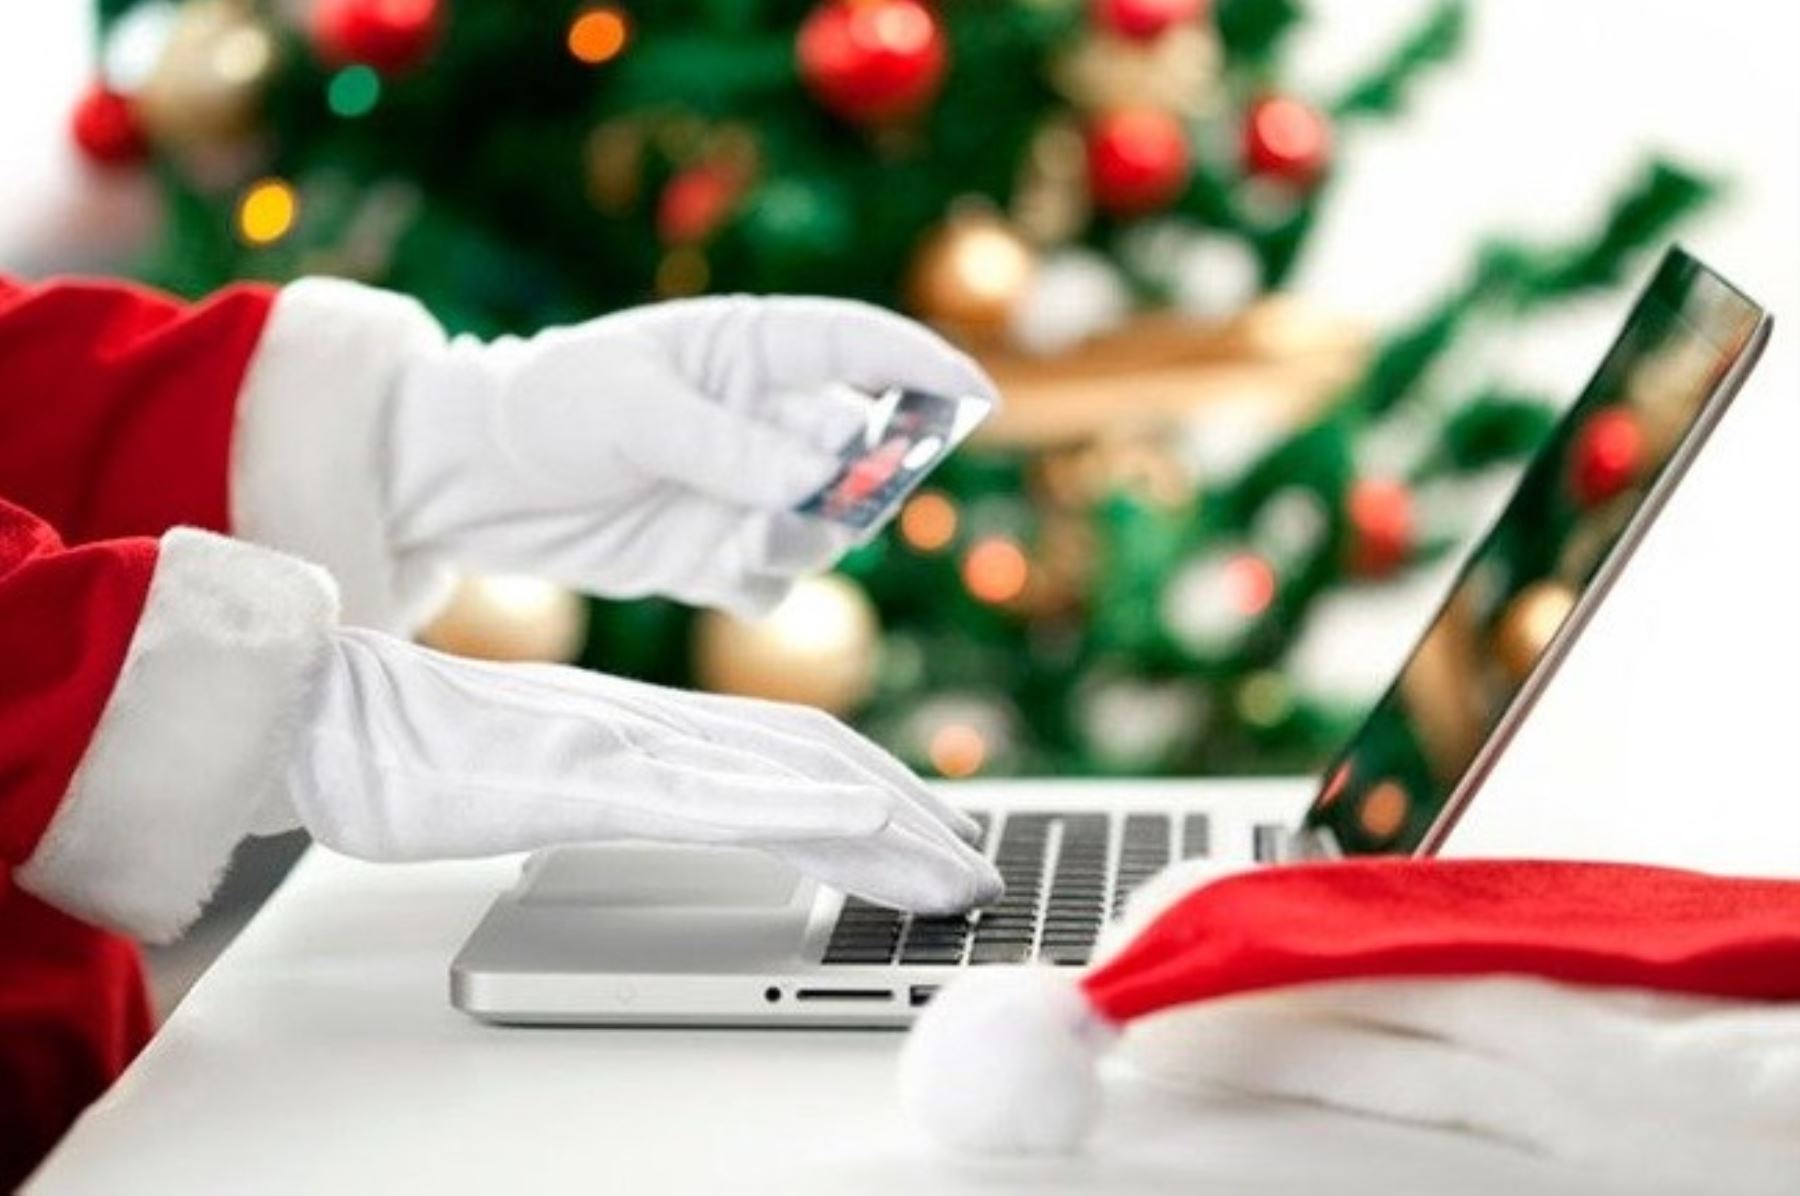 Las redes sociales son una gran ayuda para los negocios en Navidad. Cortesía